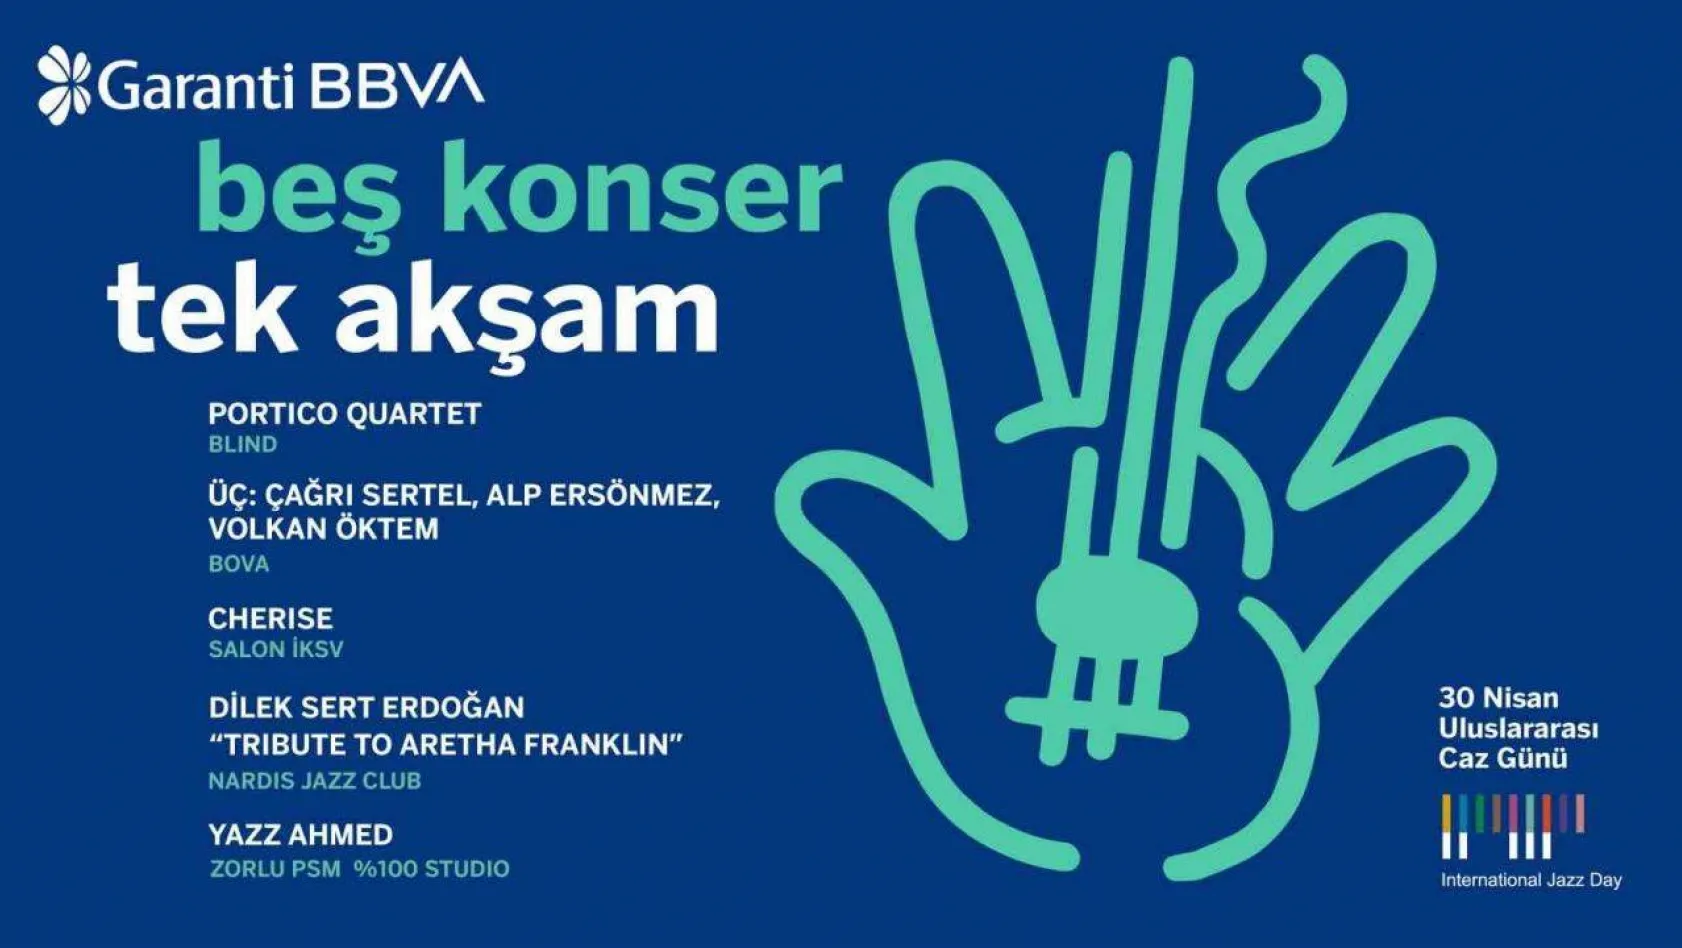 Garanti BBVA, Uluslararası Caz Günü'nü tek akşamda 5 konserle kutlayacak